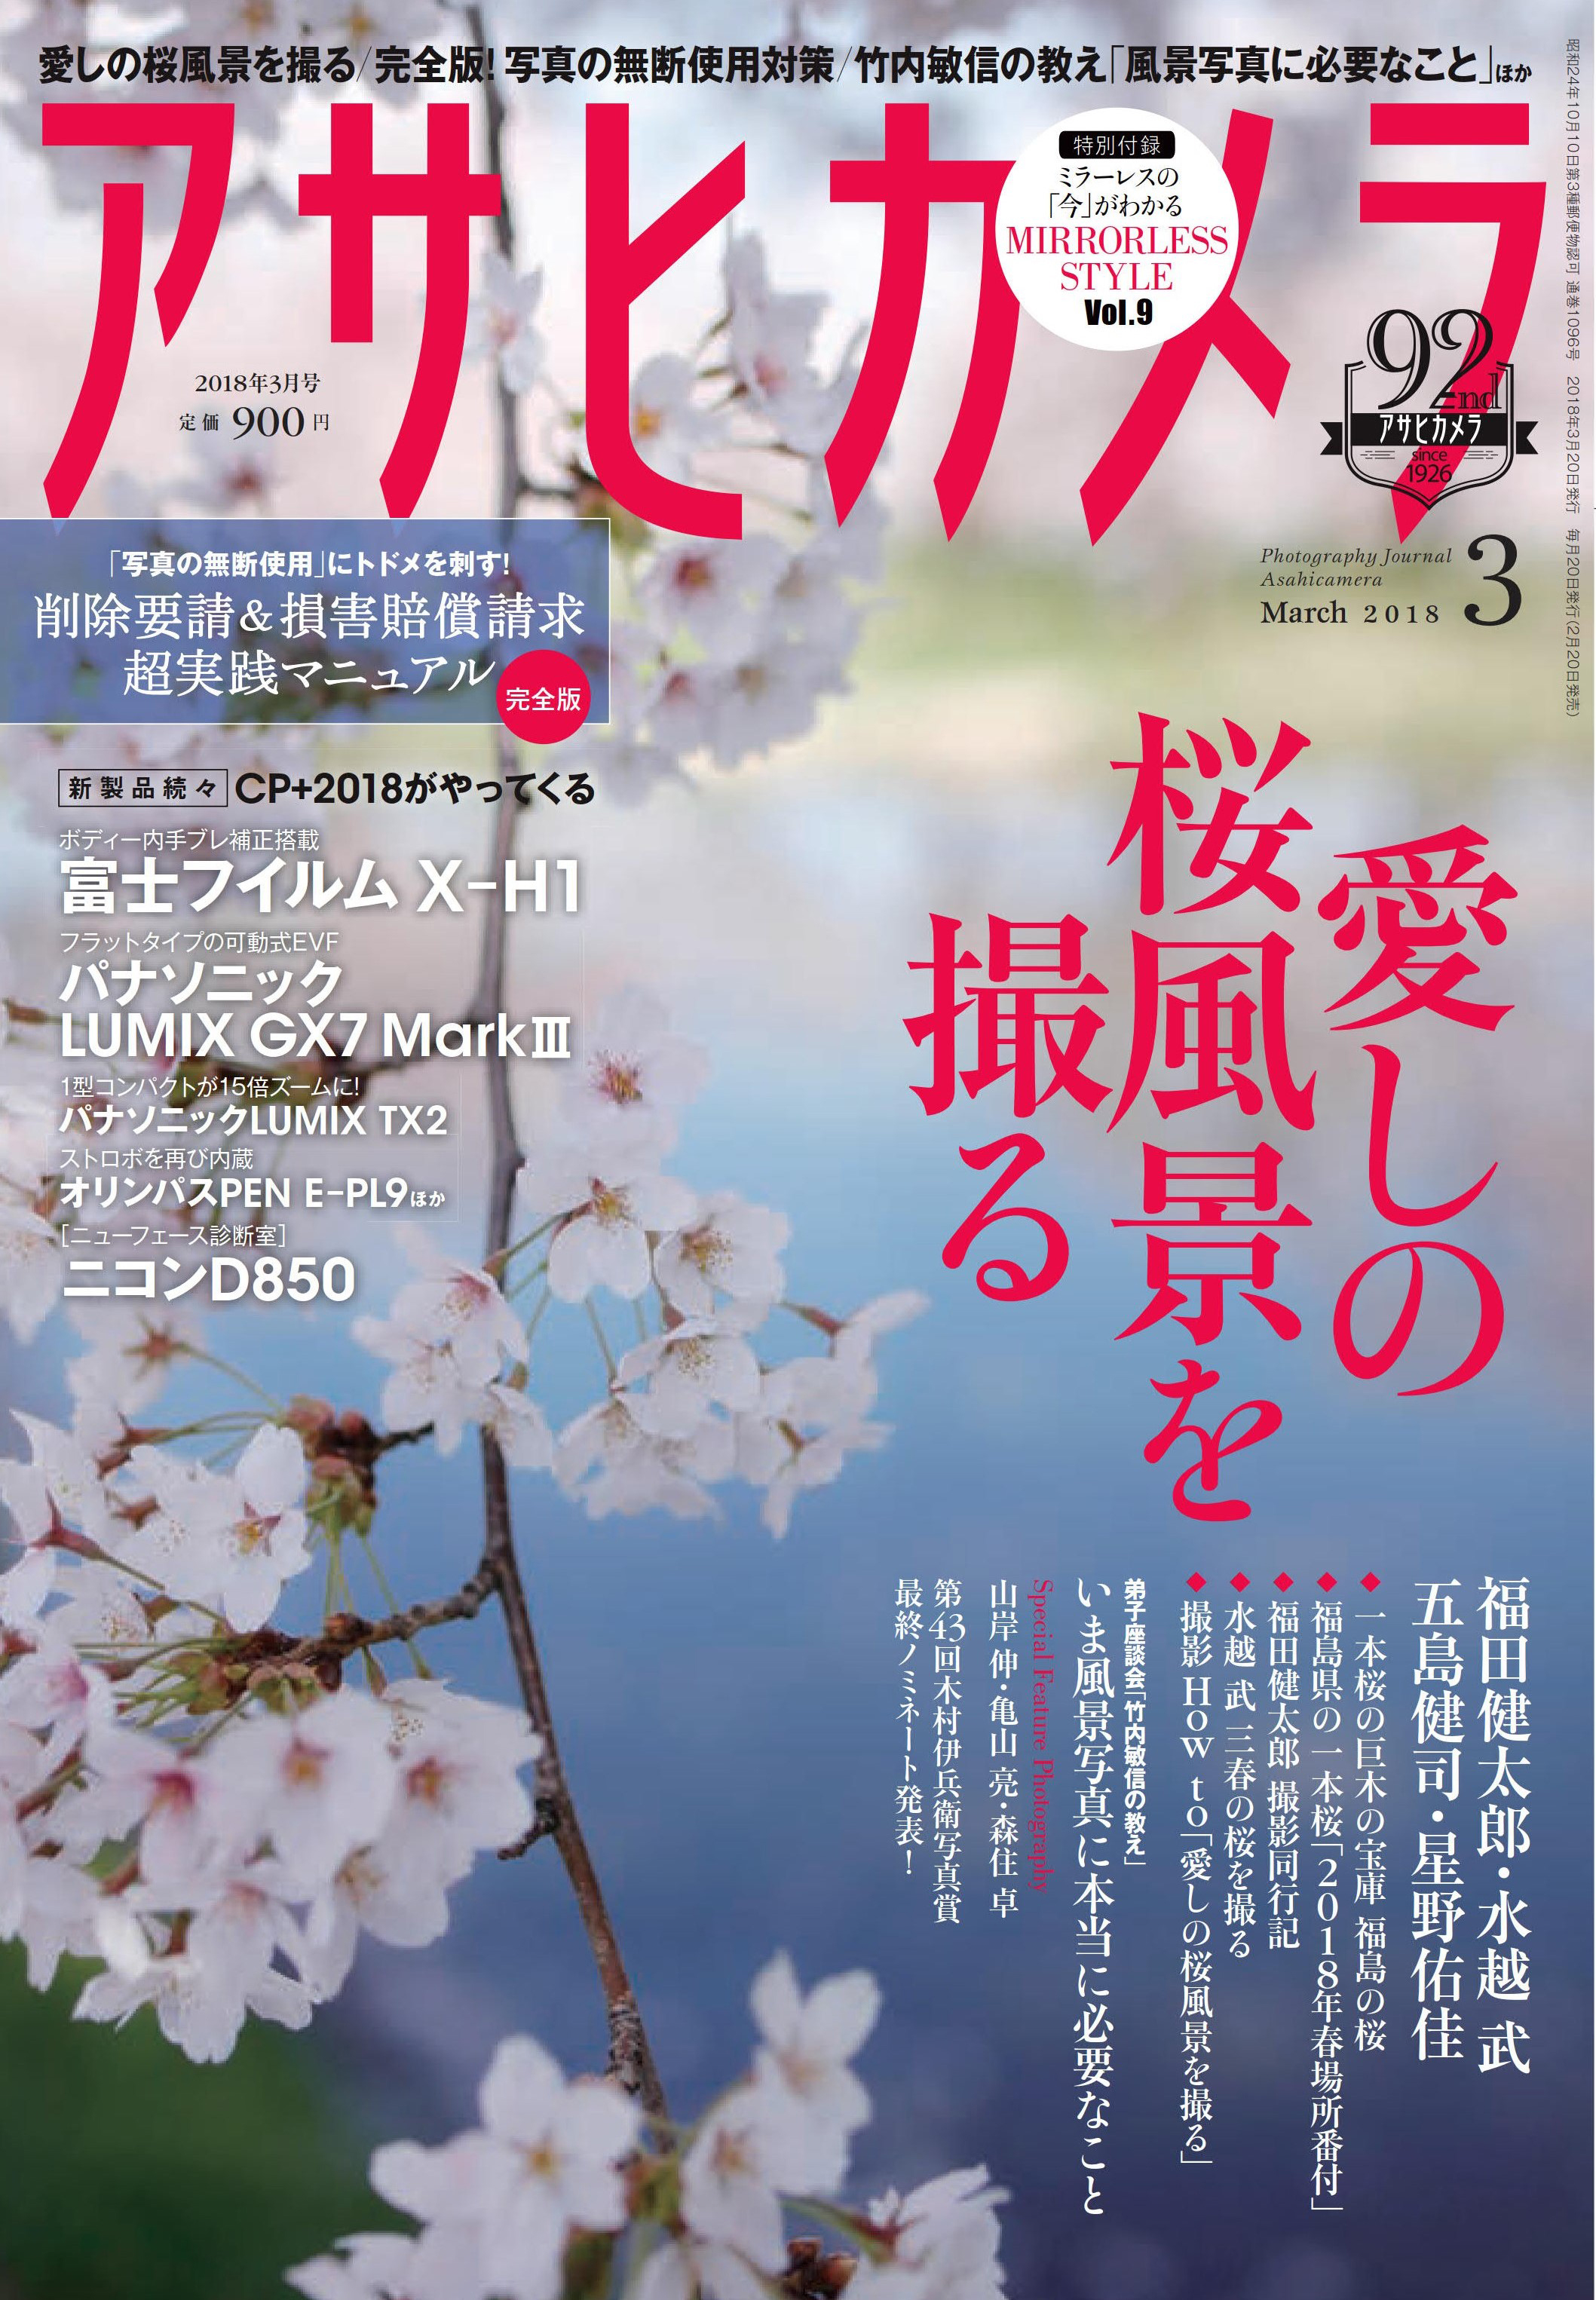 「アサヒカメラ 2018年 03月号」表紙。巻頭特集は＜愛しの桜風景を撮る＞です